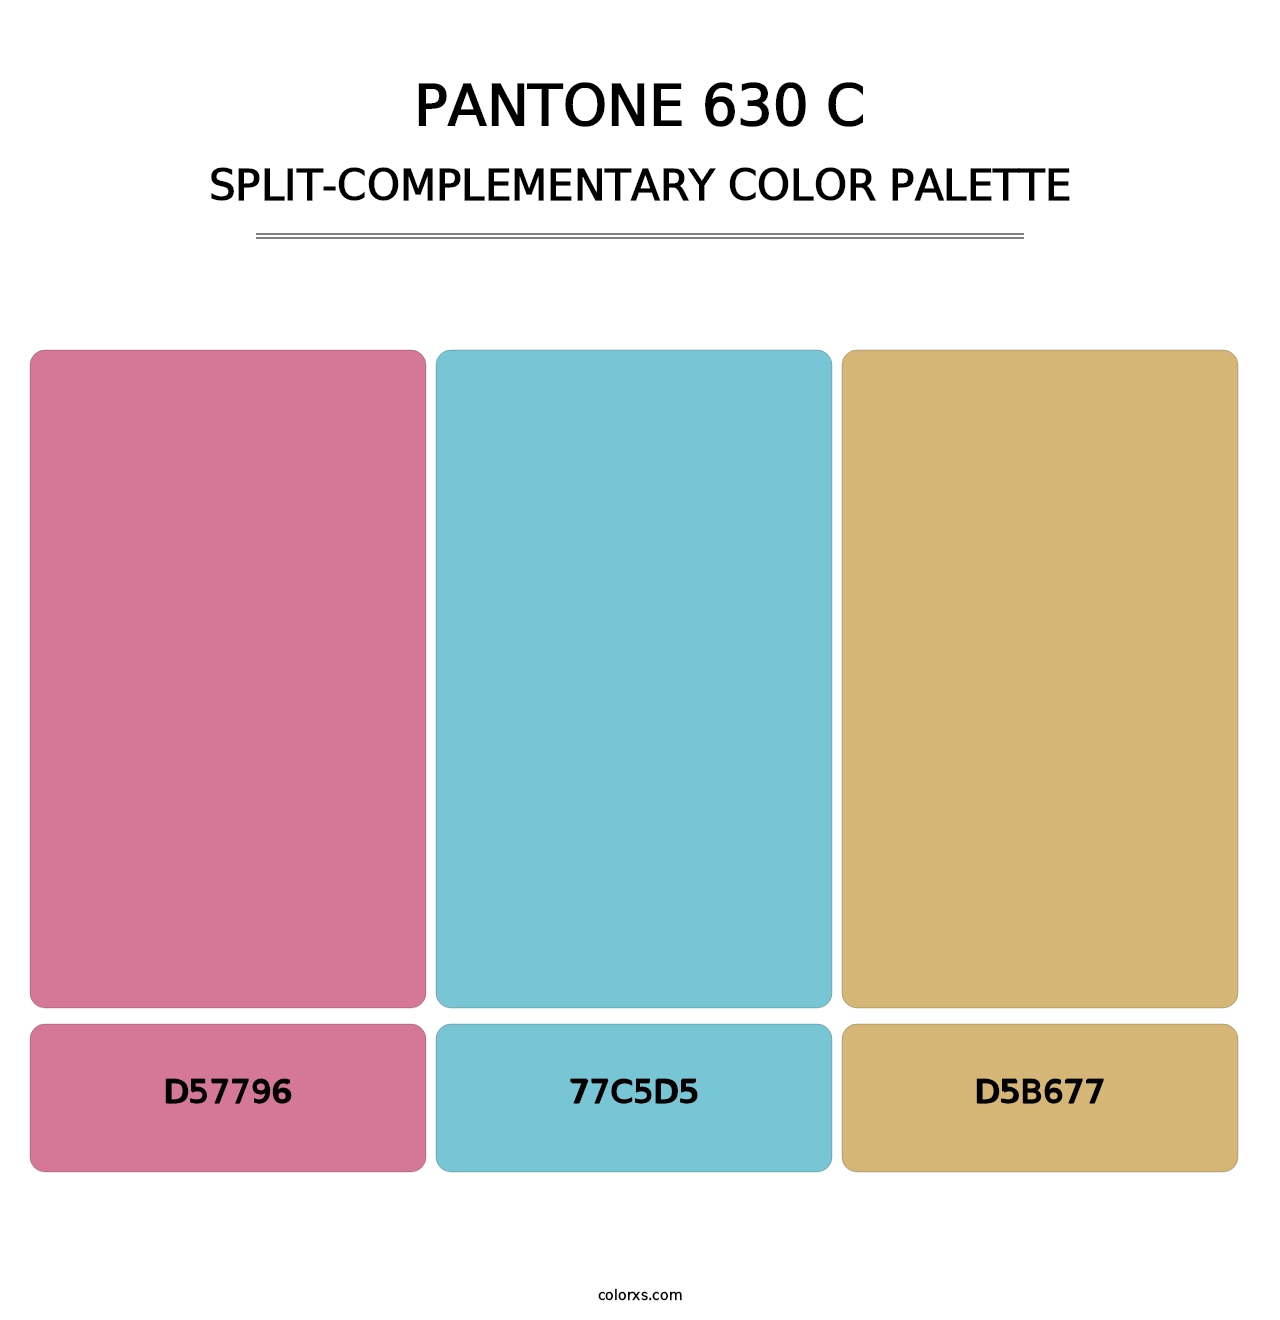 PANTONE 630 C - Split-Complementary Color Palette